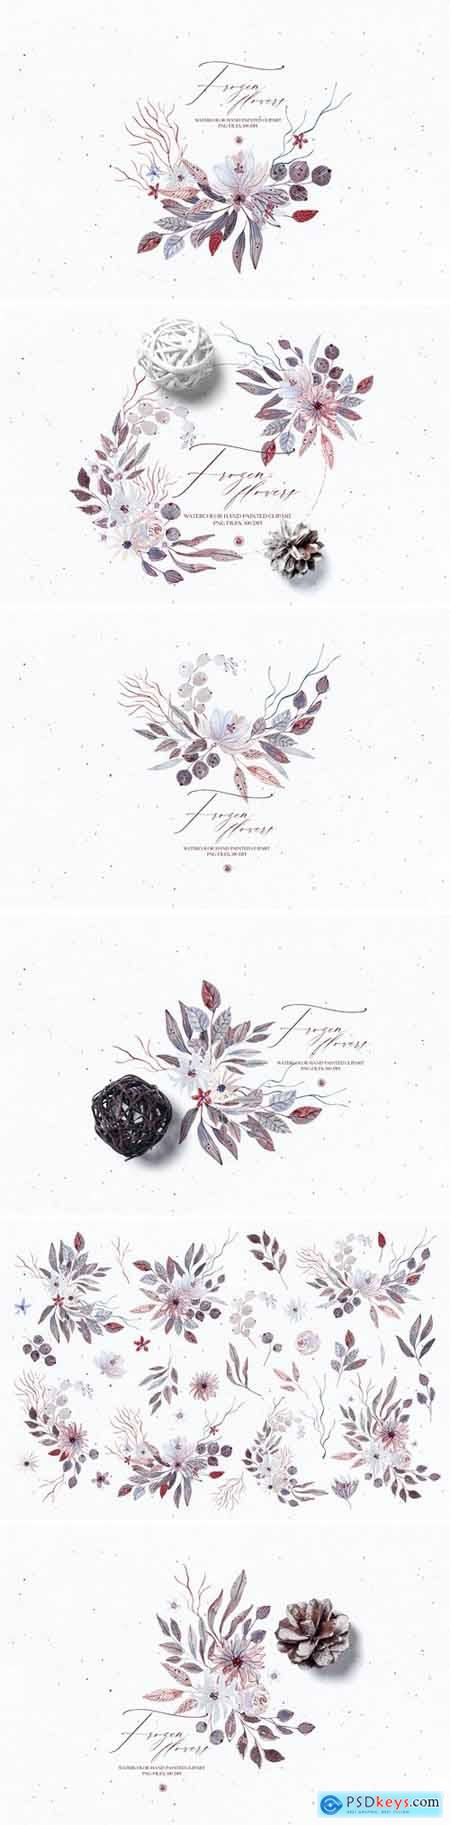 Watercolor floral set - Frozen Flowers